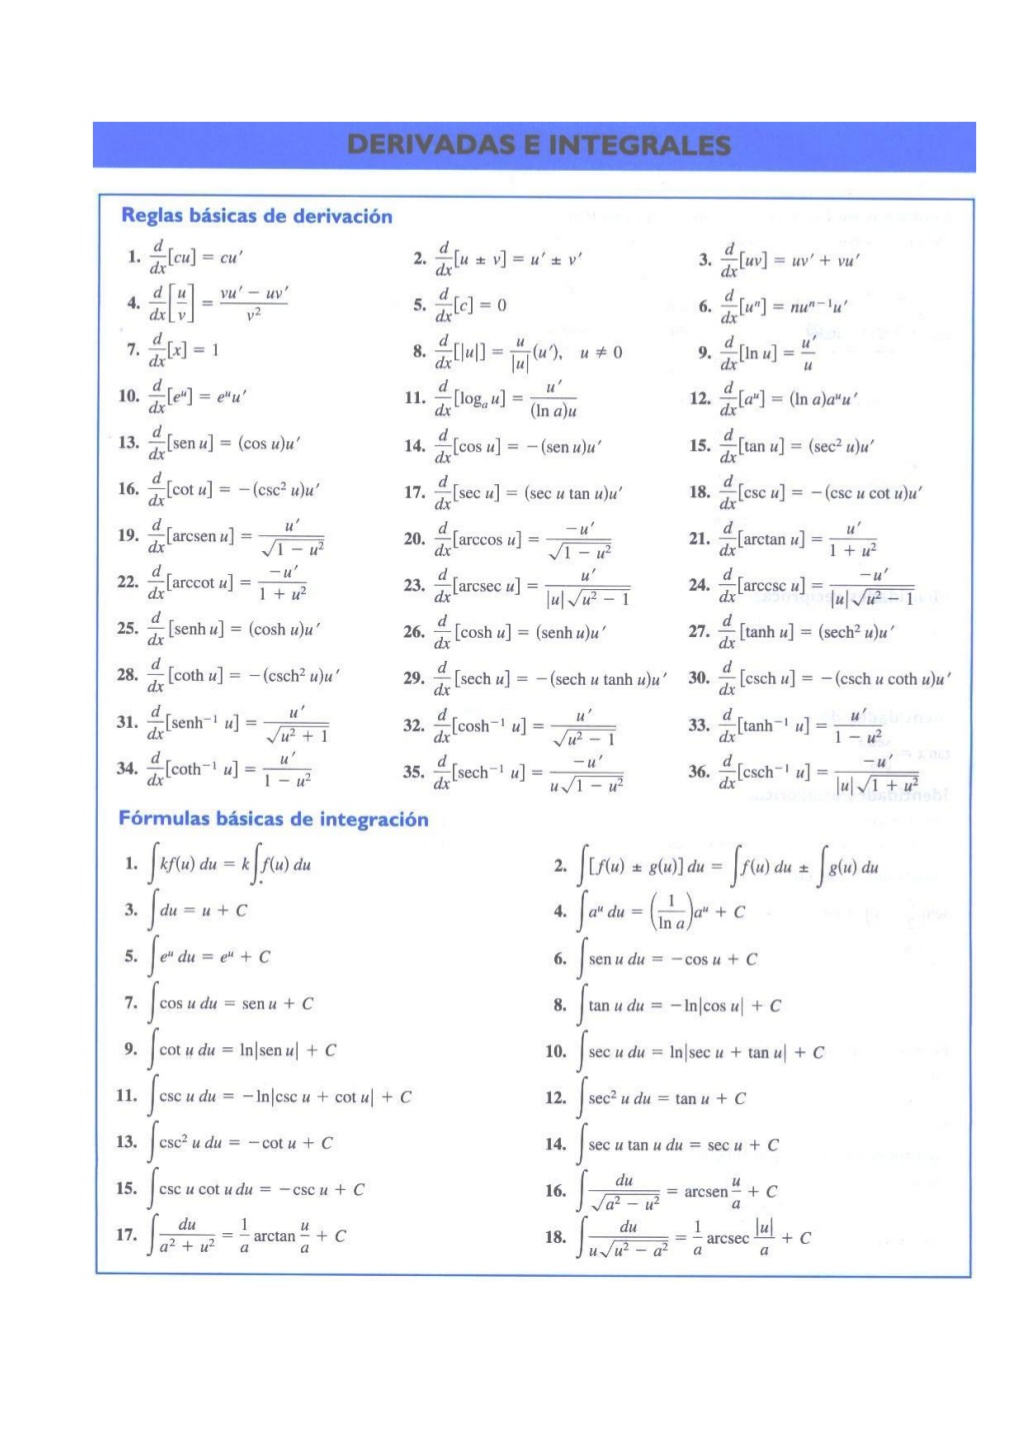 Formulas De Derivadas E Integrales 1 1024 Tabela De Derivadas E Integrais 4412